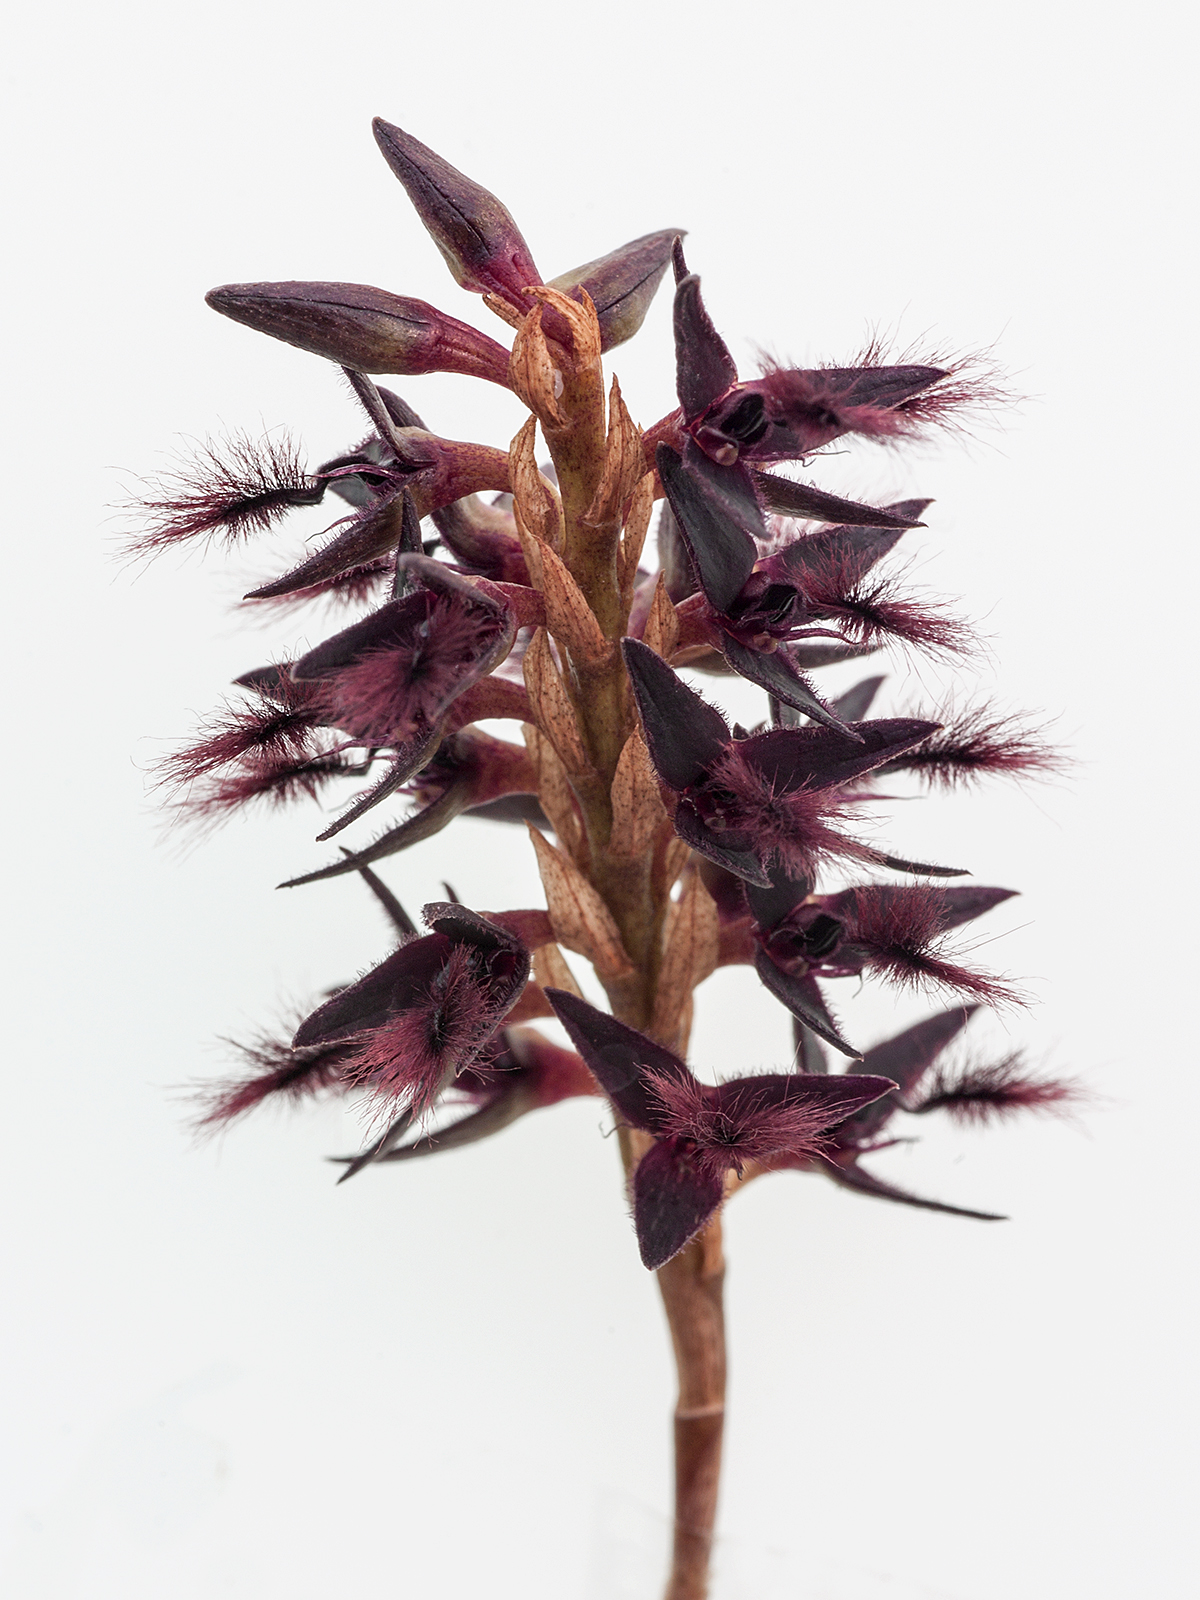 Bulbophyllum saltatorium